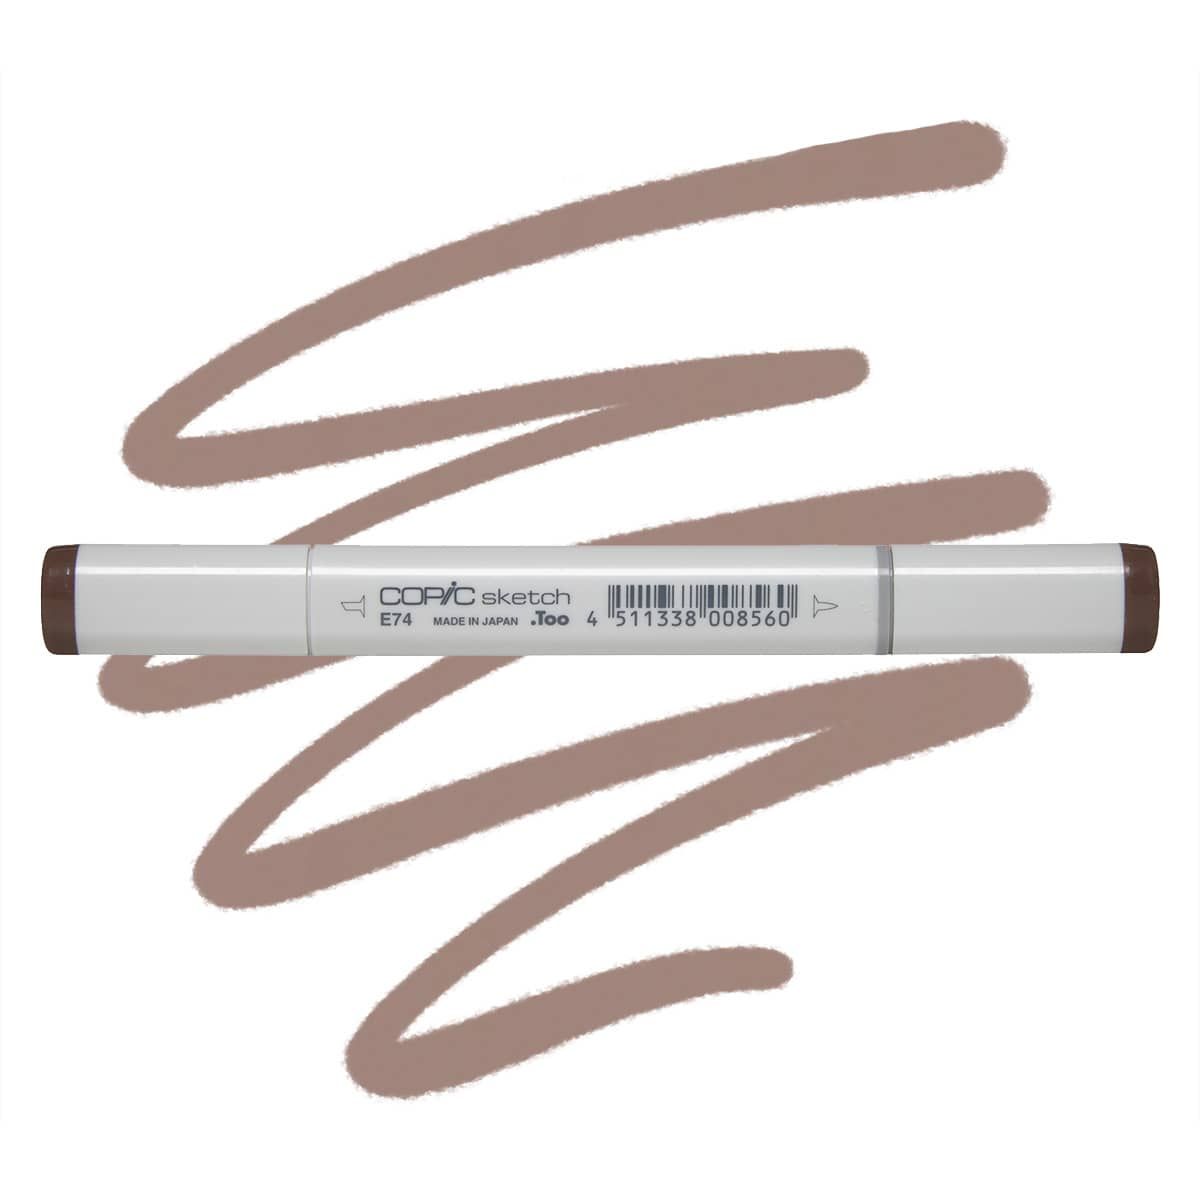  Copic Markers E74-Sketch, Cocoa Brown